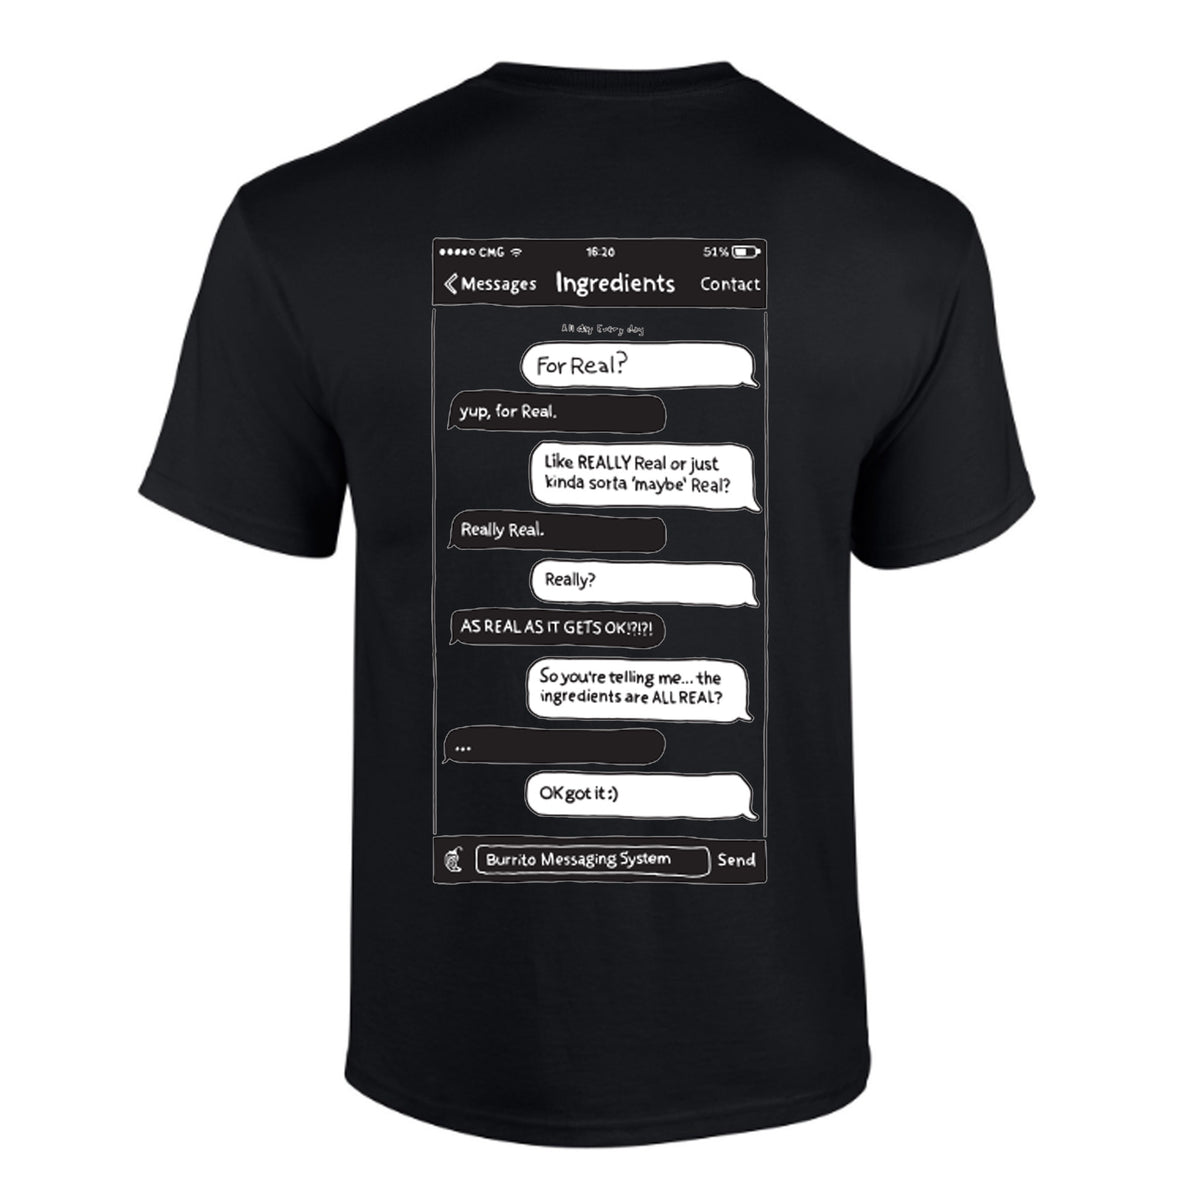 Chipotle Unisex T-Shirt: Black